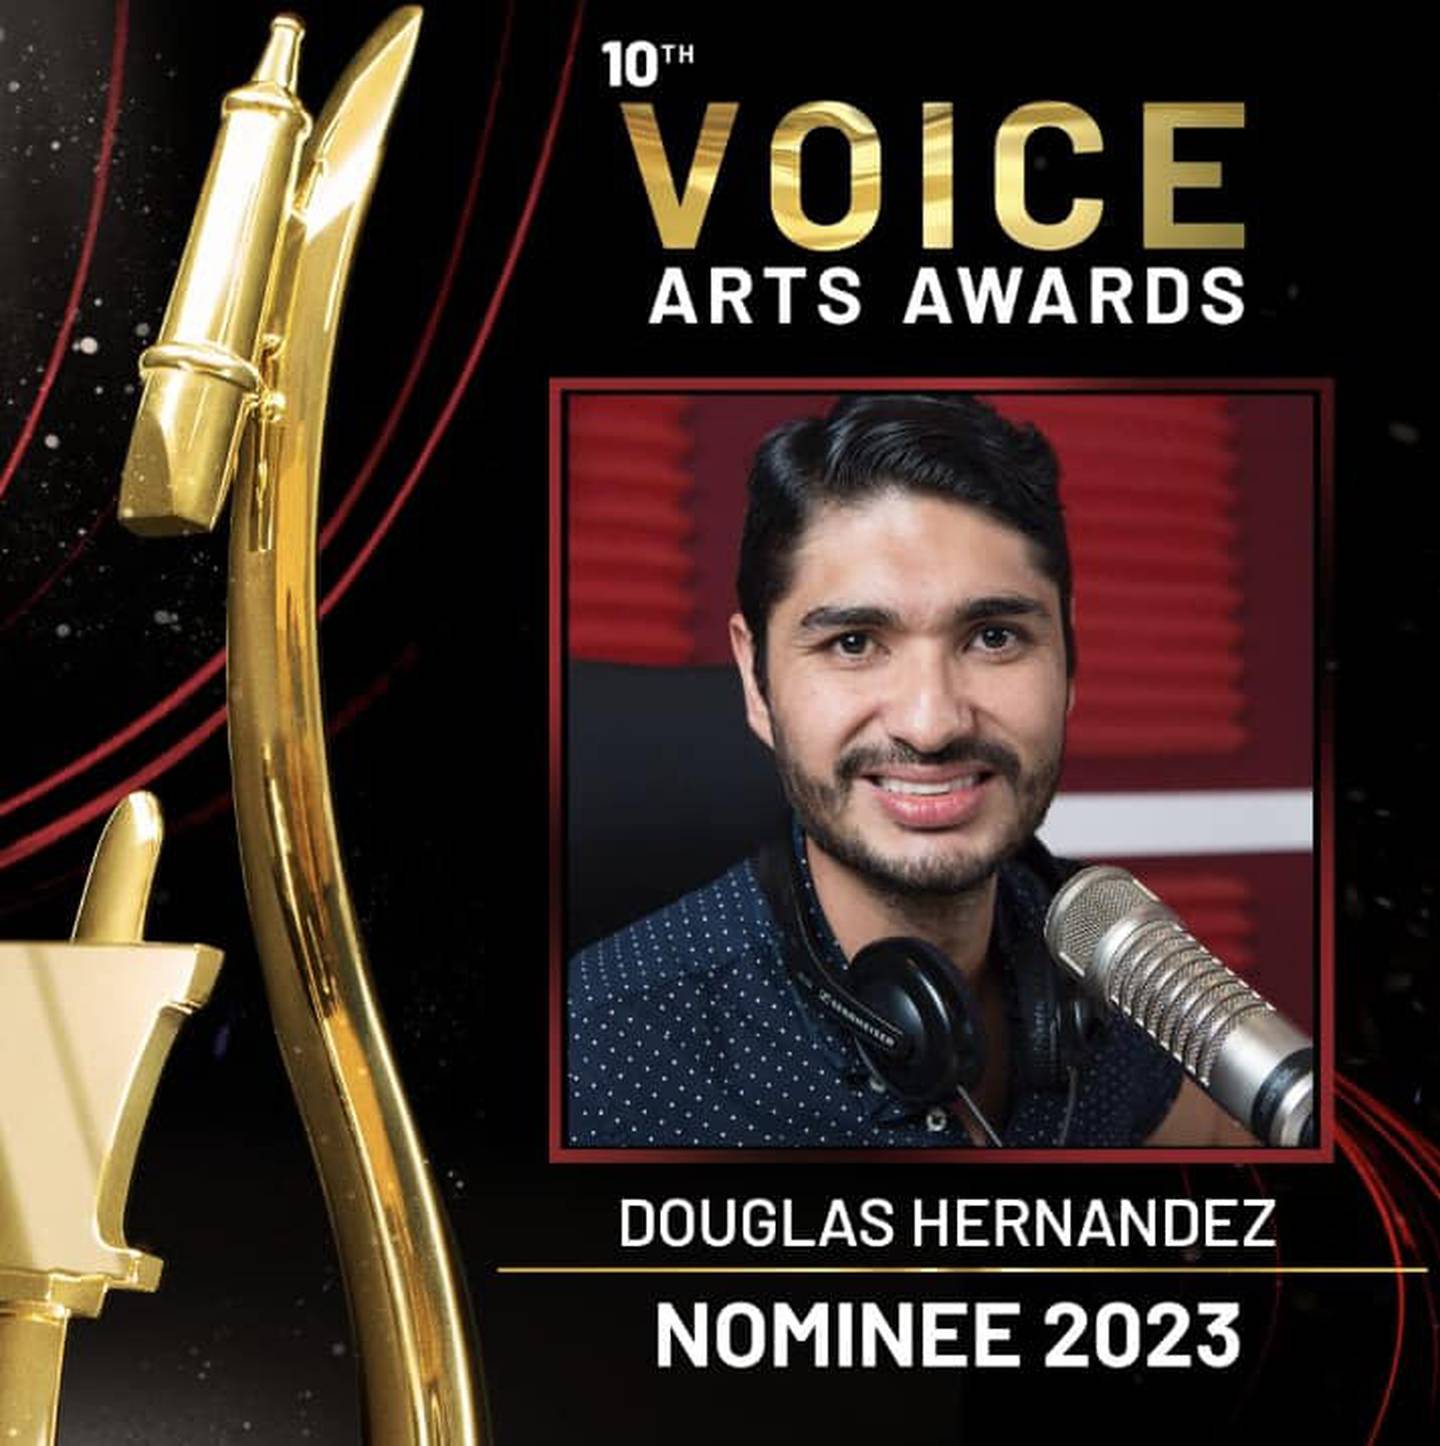 Locutores ticos nominados a los Voice Arts Awards 2023